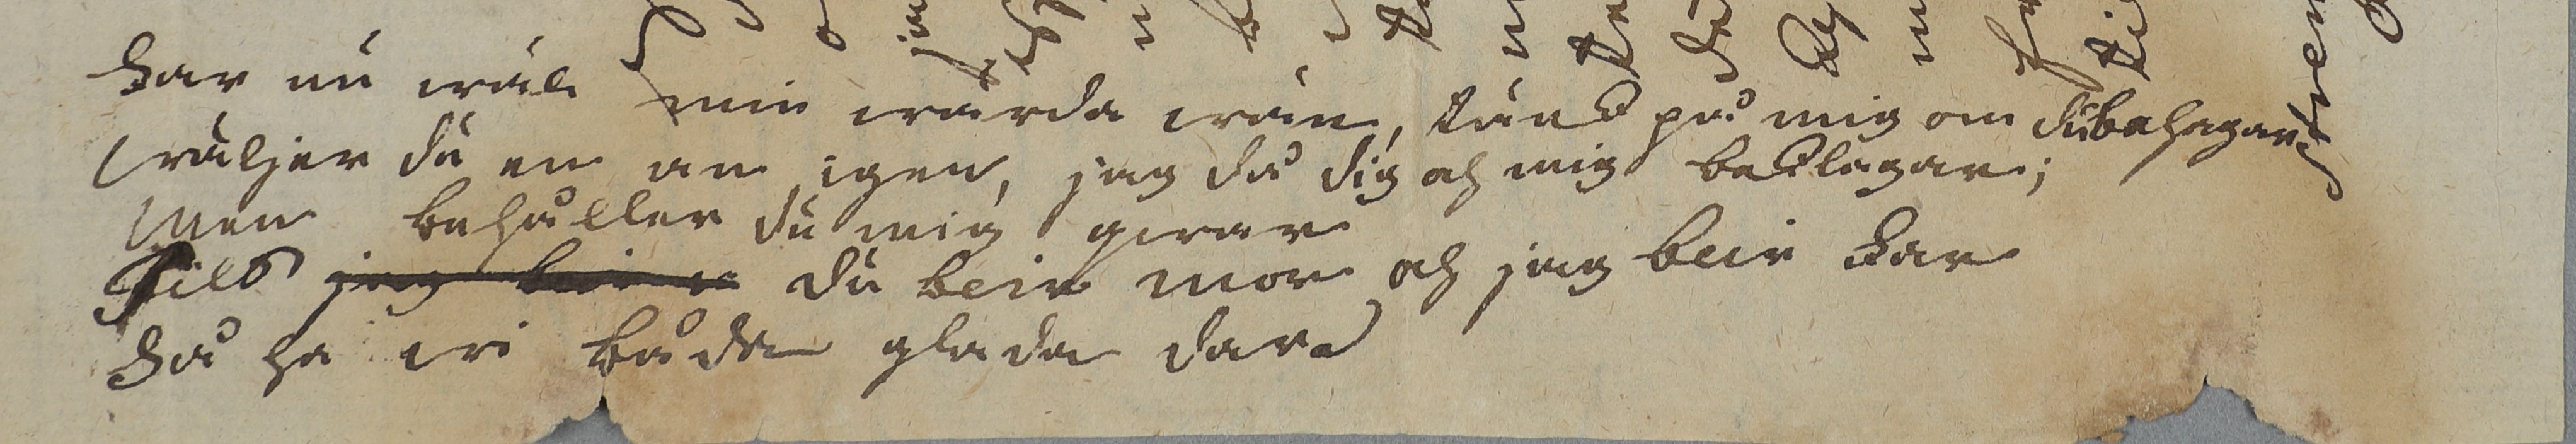 Kärleksbrev från 1776 med en dikt längst ned.